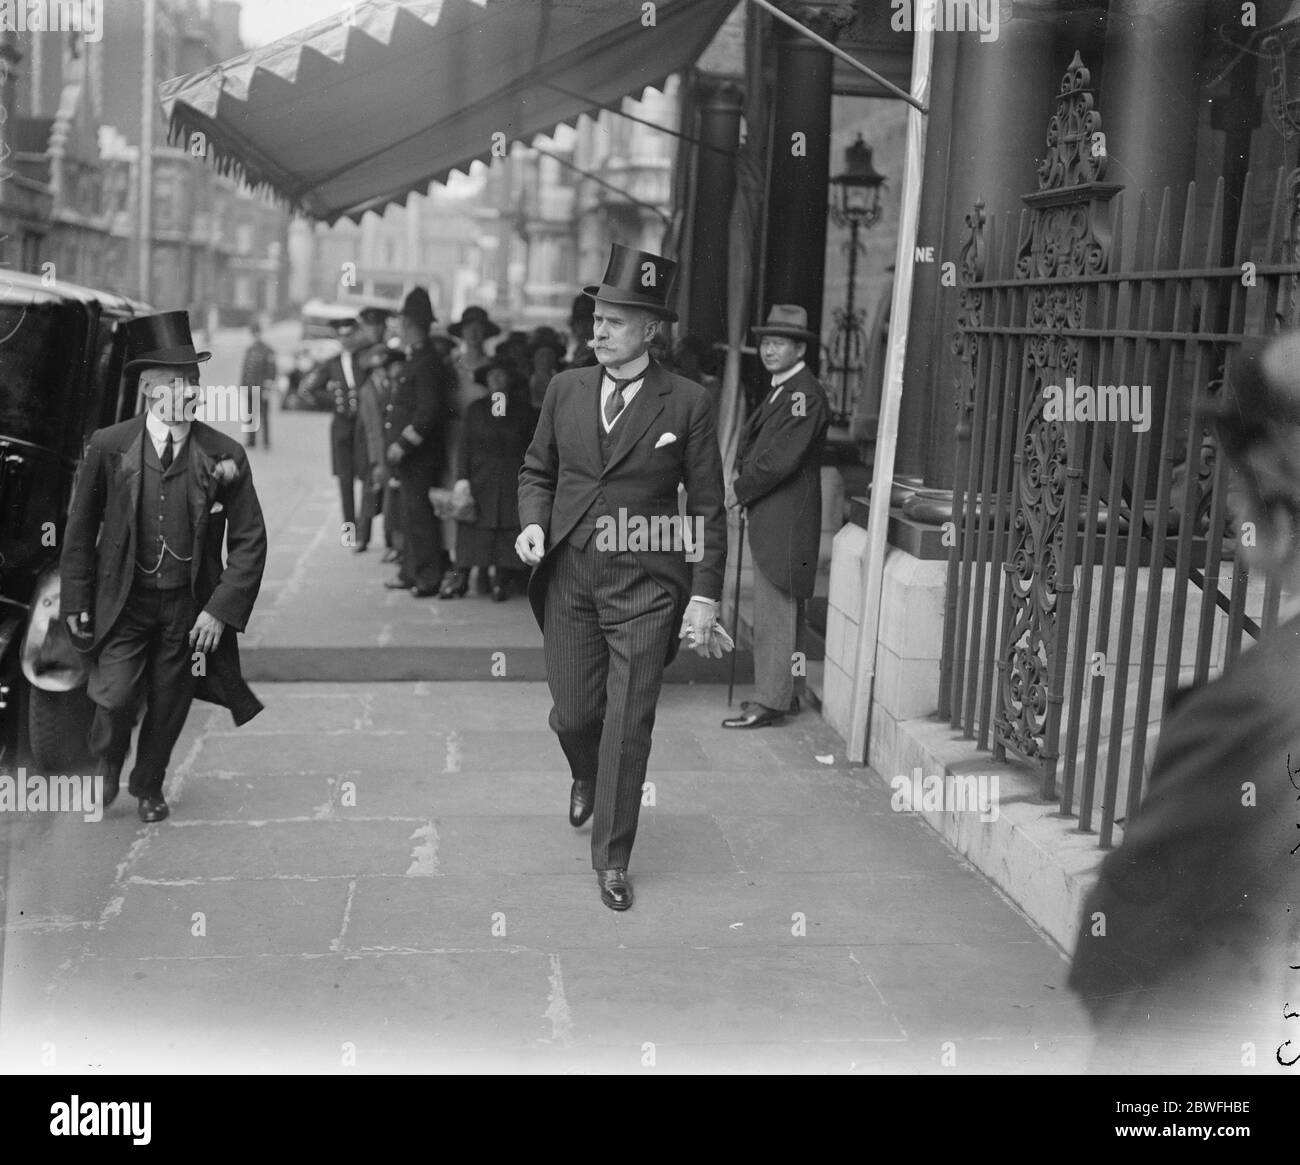 Prominente treffen sich mit dem Empfang des argentinischen Präsidenten in der Argentinier Legation in der Park Lane, London Lord Faringdon, der am 20. Juli 1922 abgeht Stockfoto